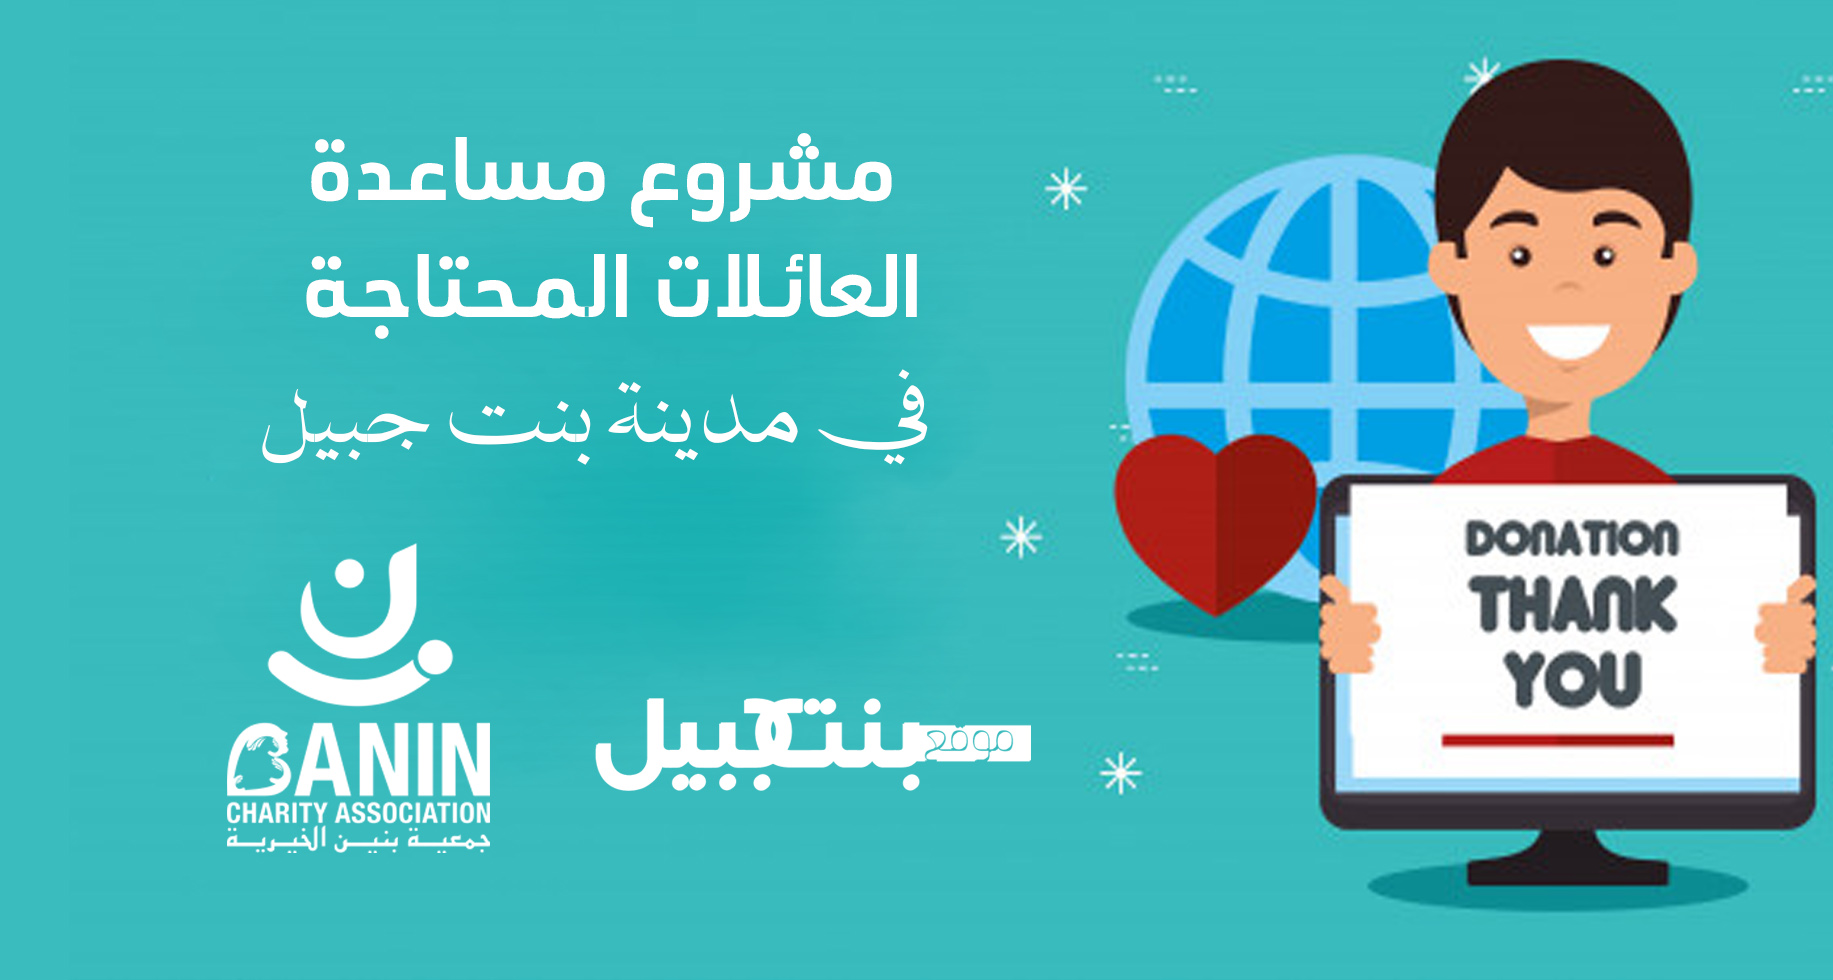 موقع بنت جبيل وجمعية بنين يطلقان حملة التبرعات لمساندة سكان مدينة بنت جبيل  